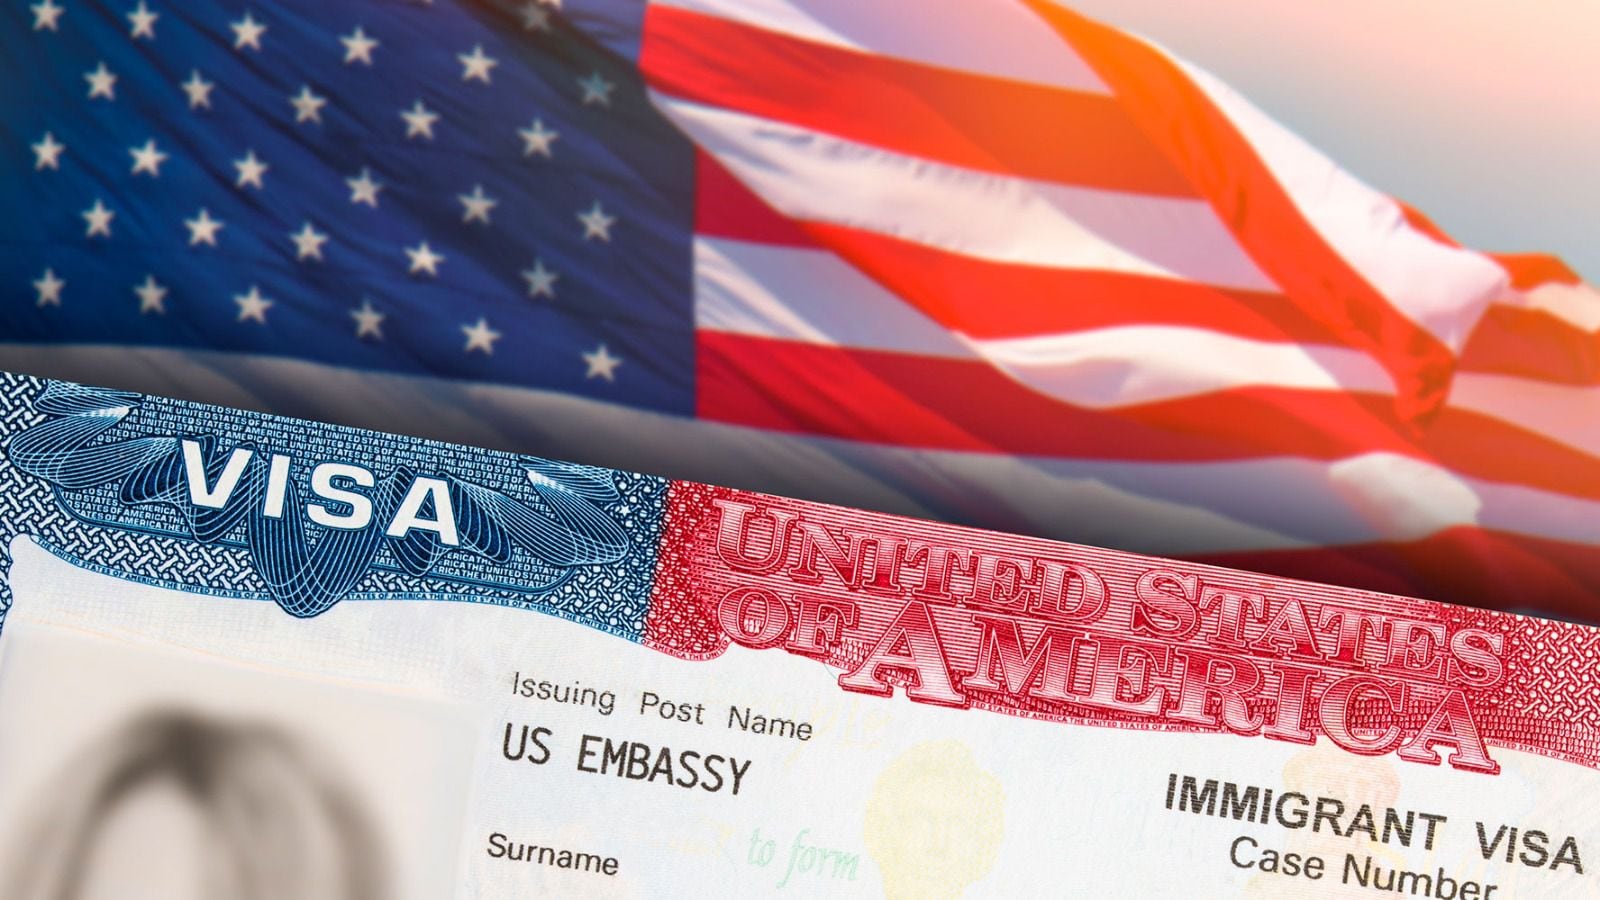 Embajada de EU adelanta el trámite de visas, ¿quiénes pueden agilizar la solicitud? 